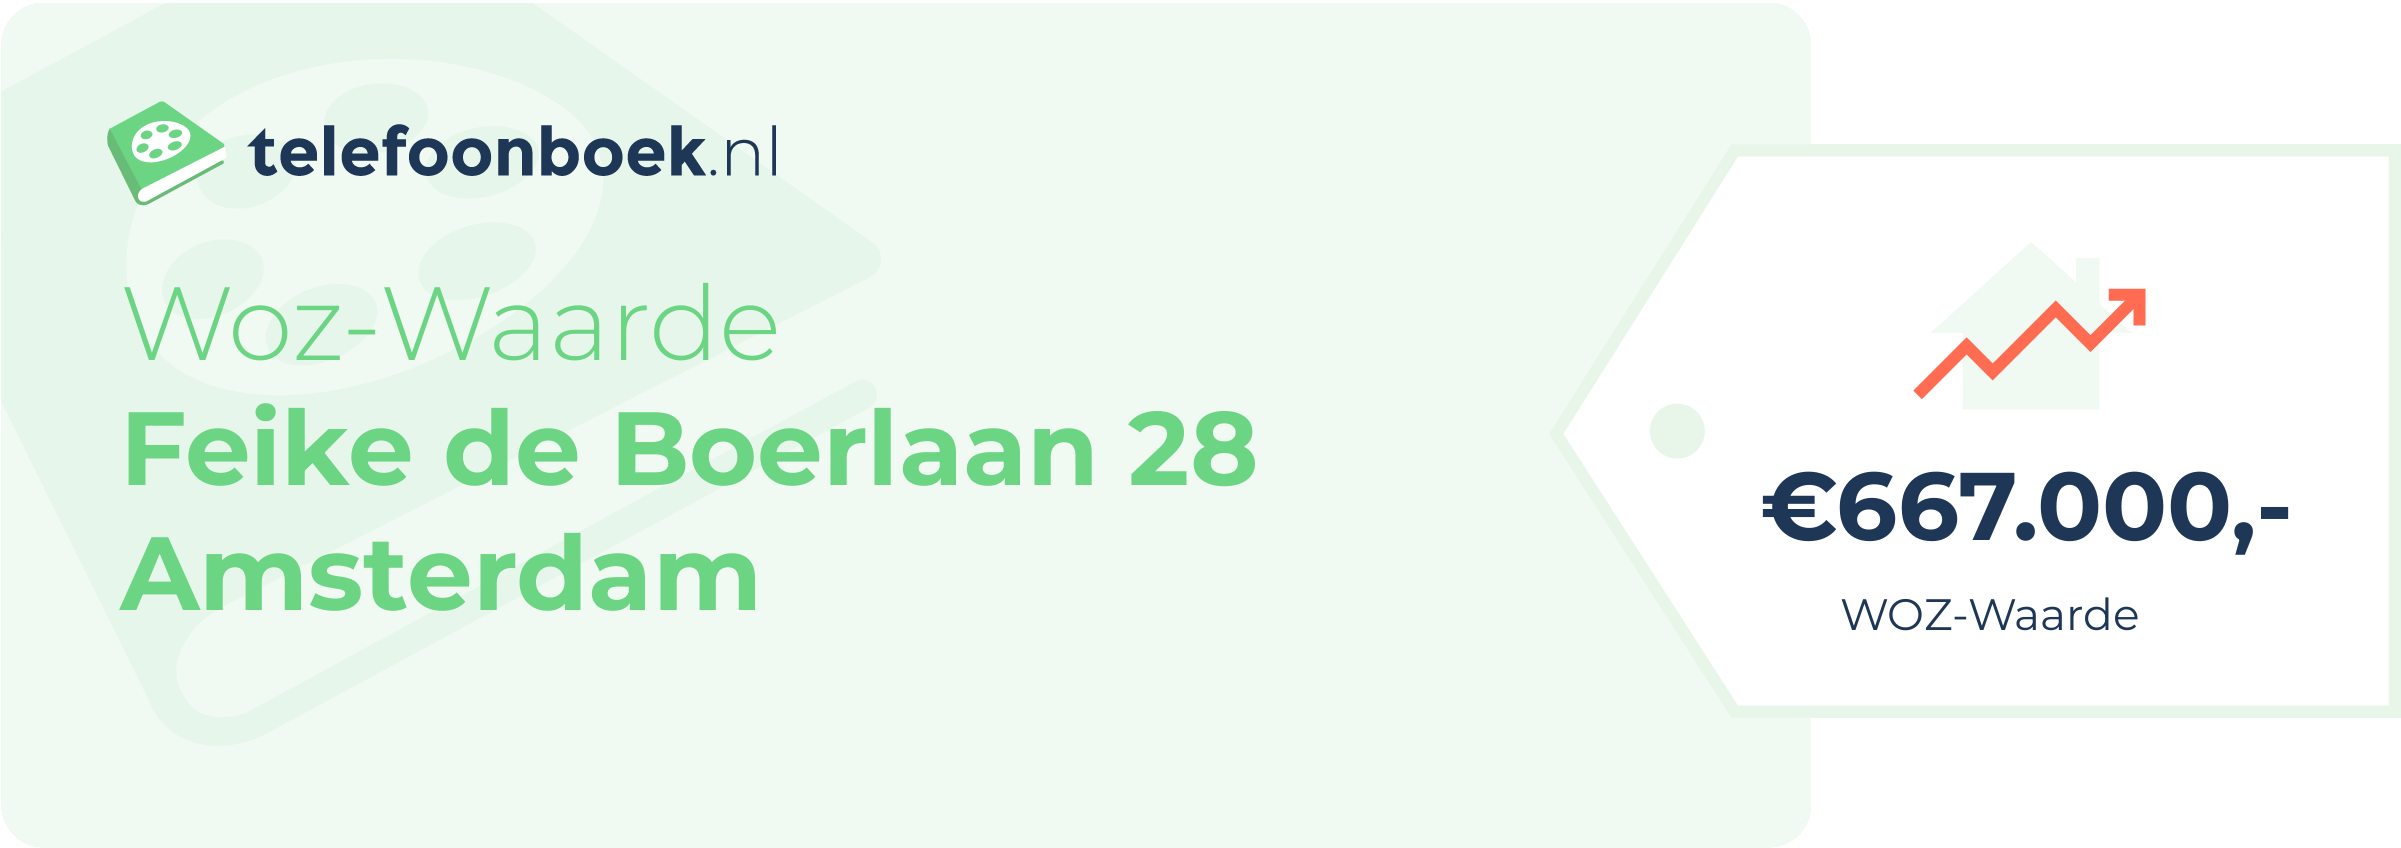 WOZ-waarde Feike De Boerlaan 28 Amsterdam